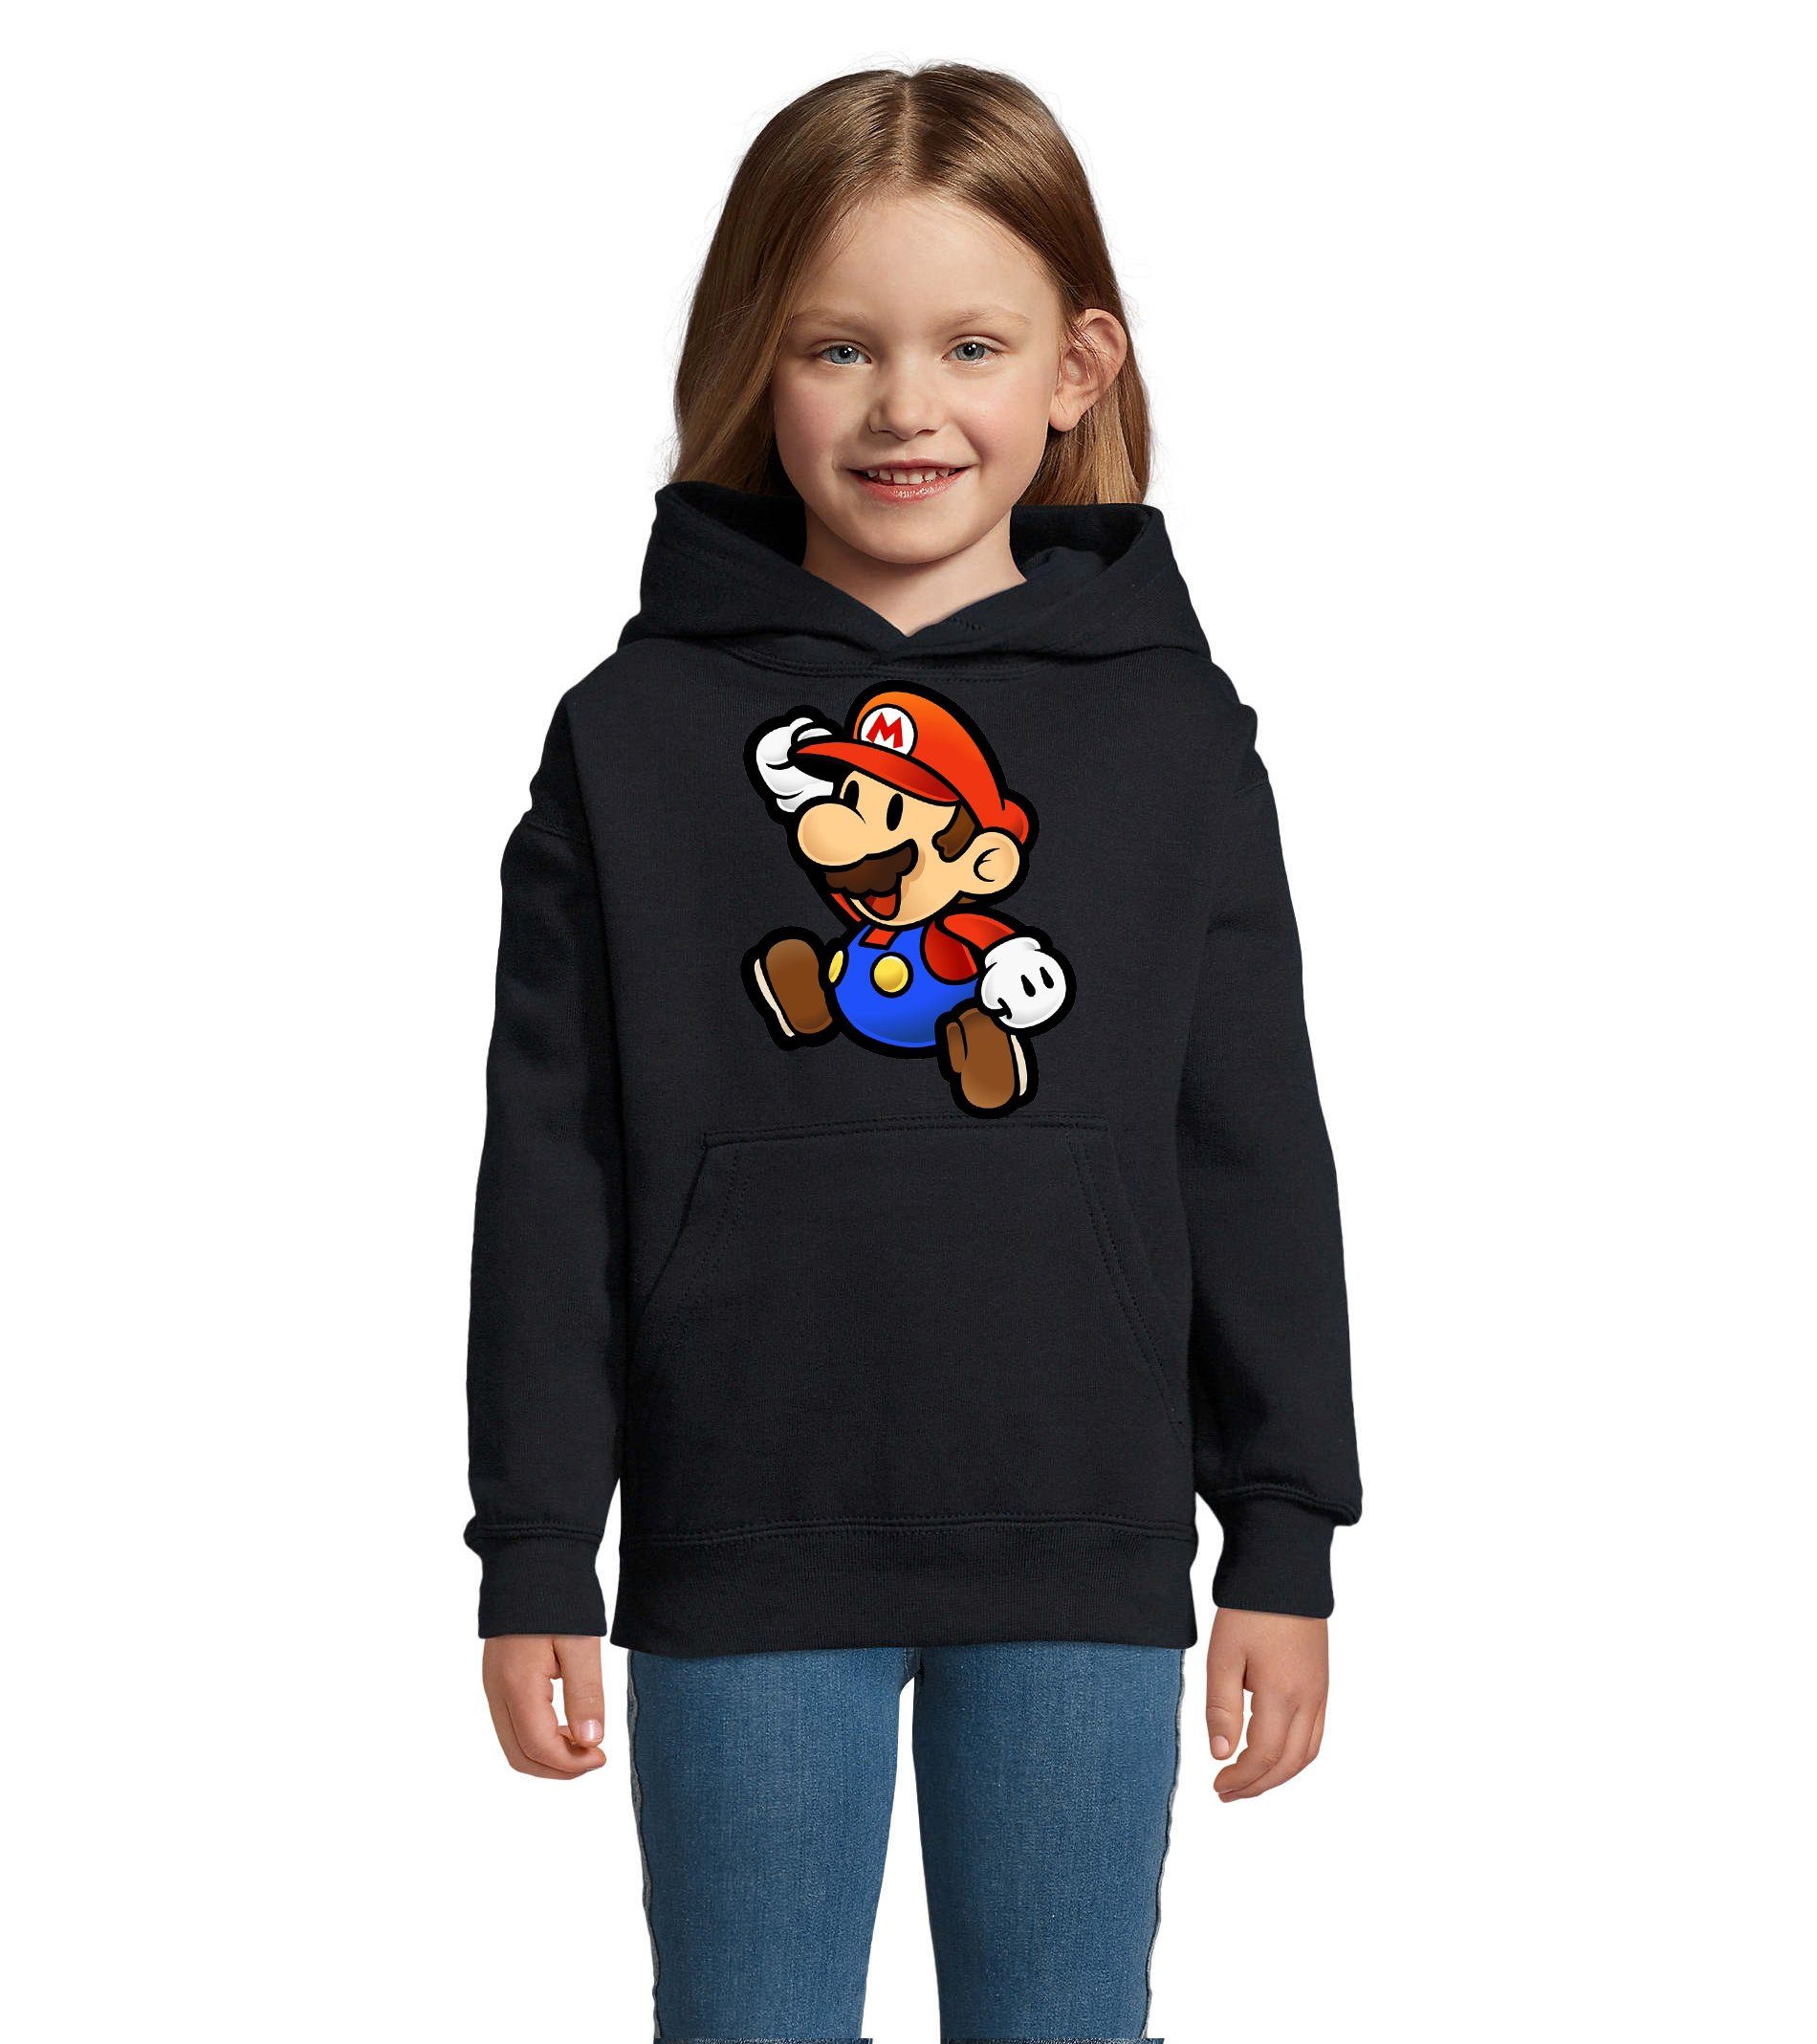 Blondie & Brownie Hoodie Kinder Jungen & Mädchen Mario Nintendo Gaming Luigi Yoshi Super mit Kapuze Navyblau